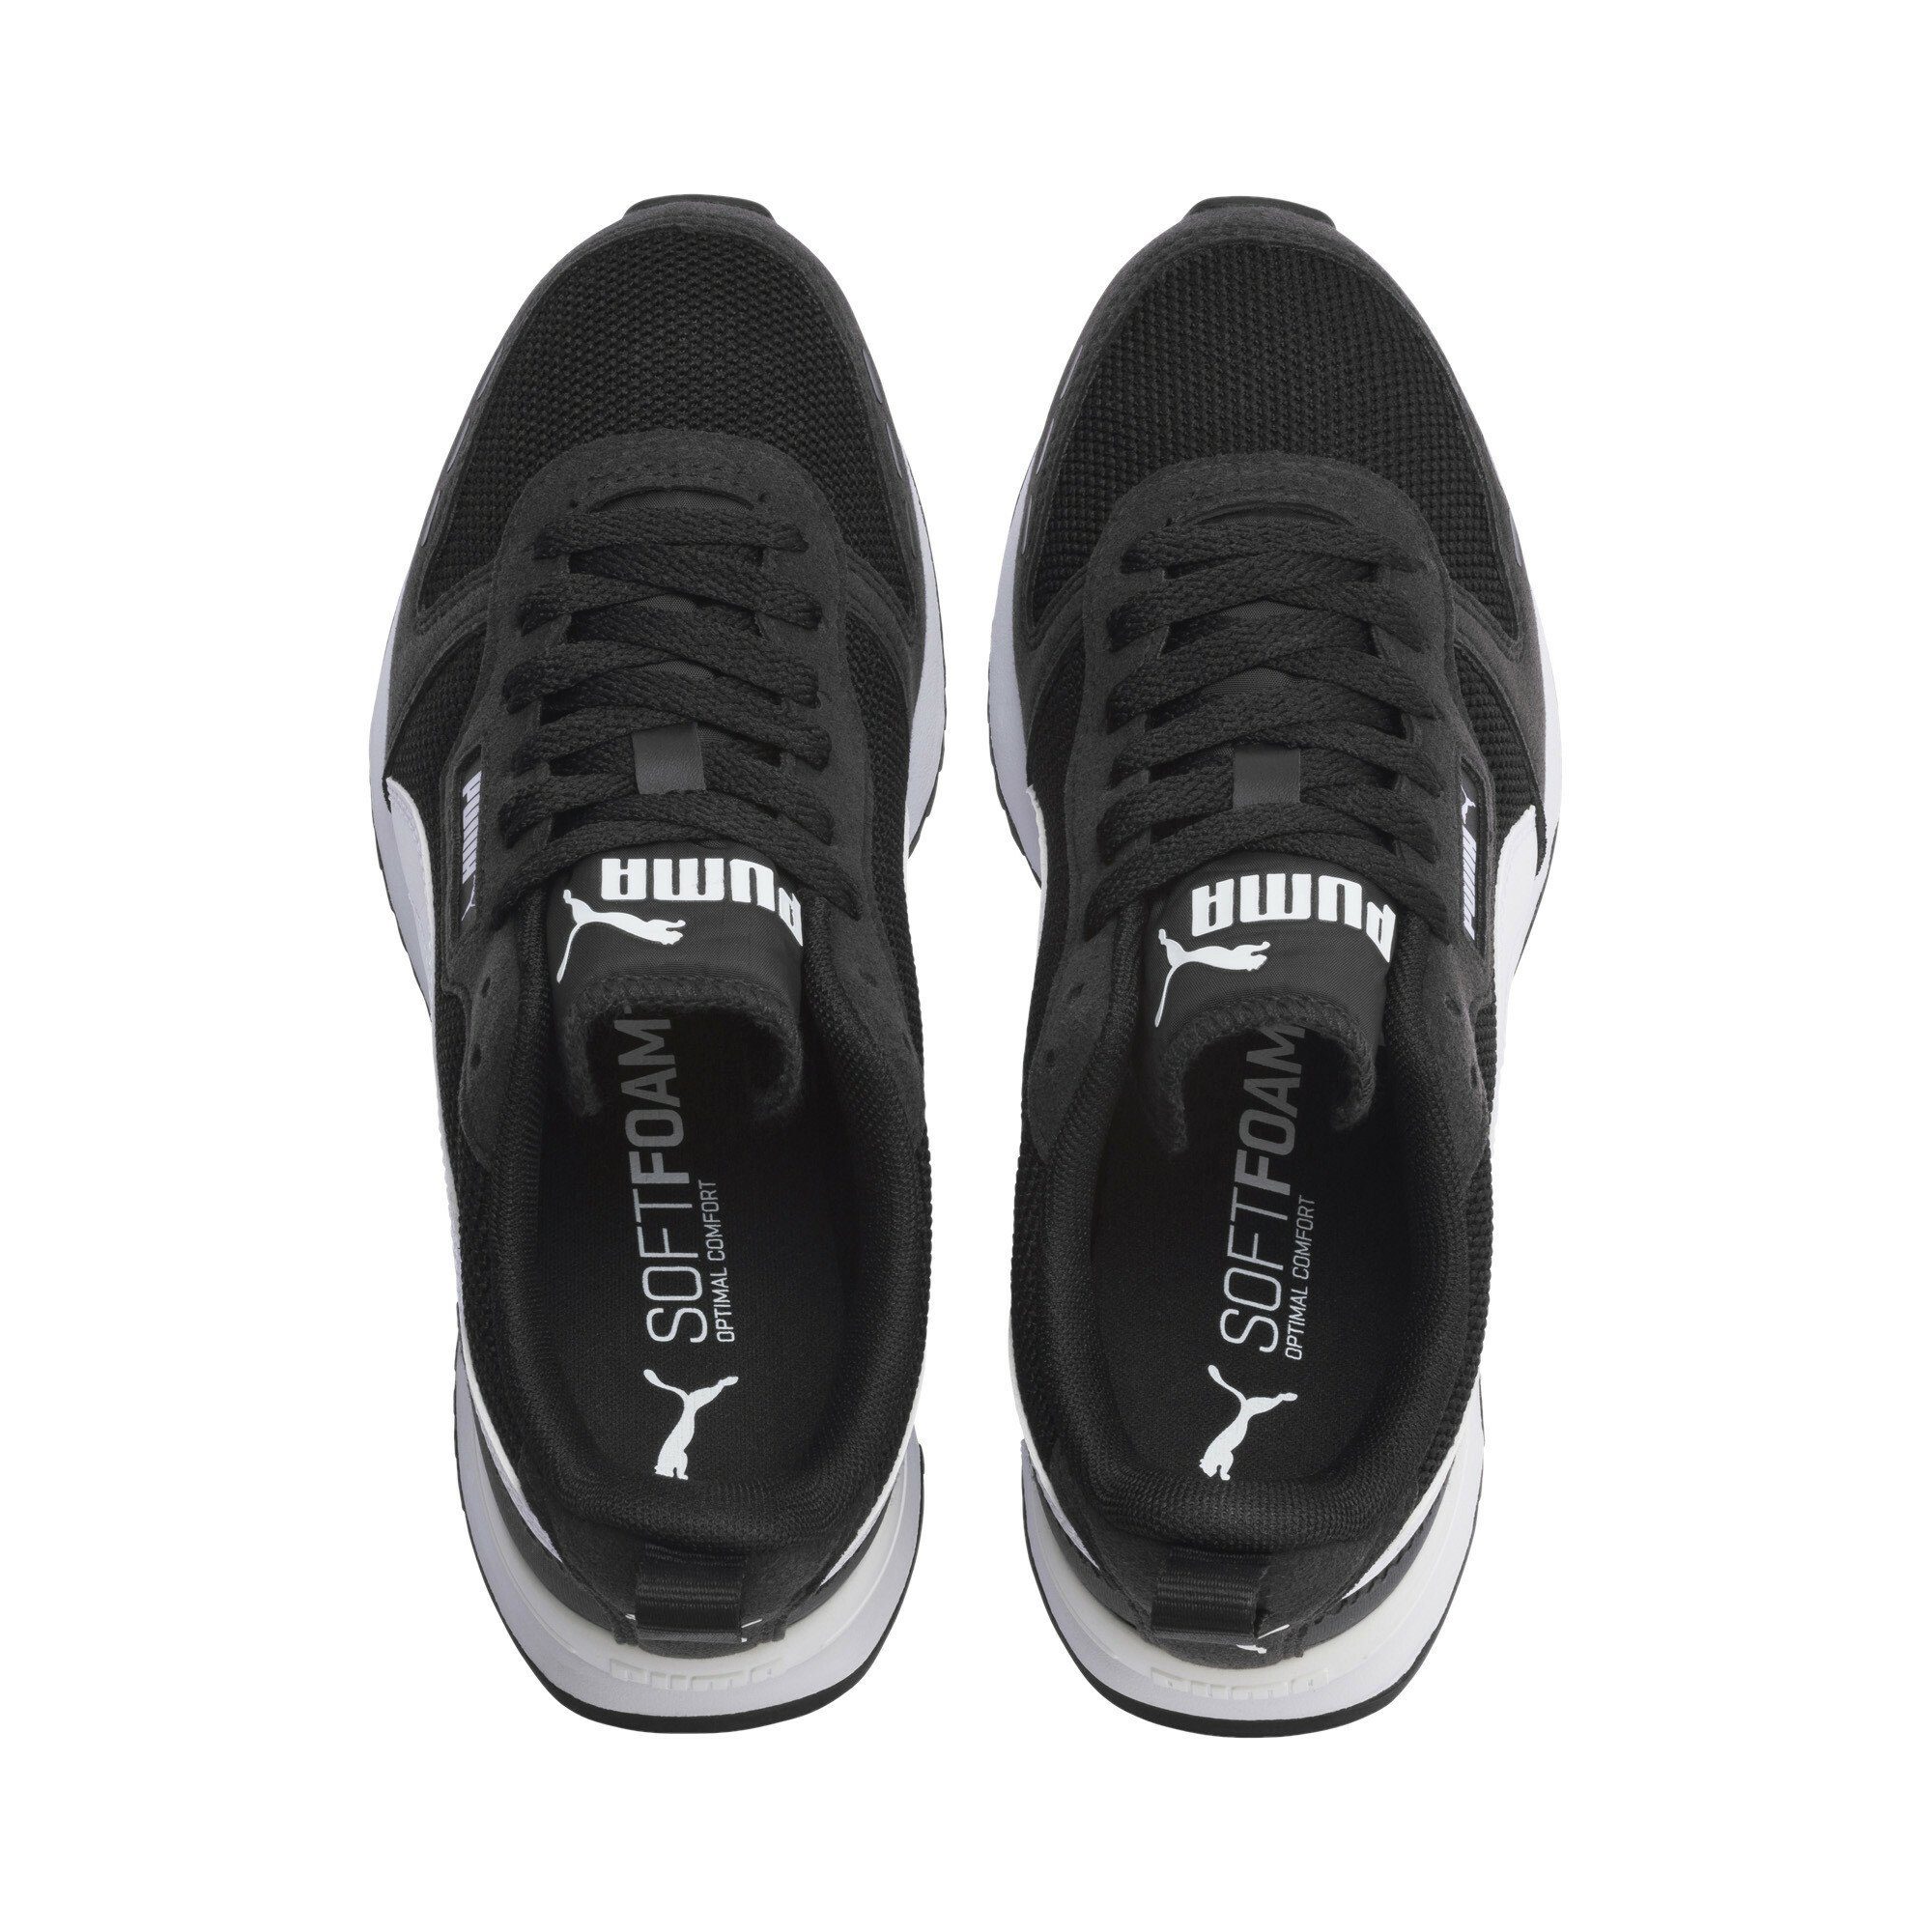 PUMA R78 Sneakers Jugendliche Black White Laufschuh